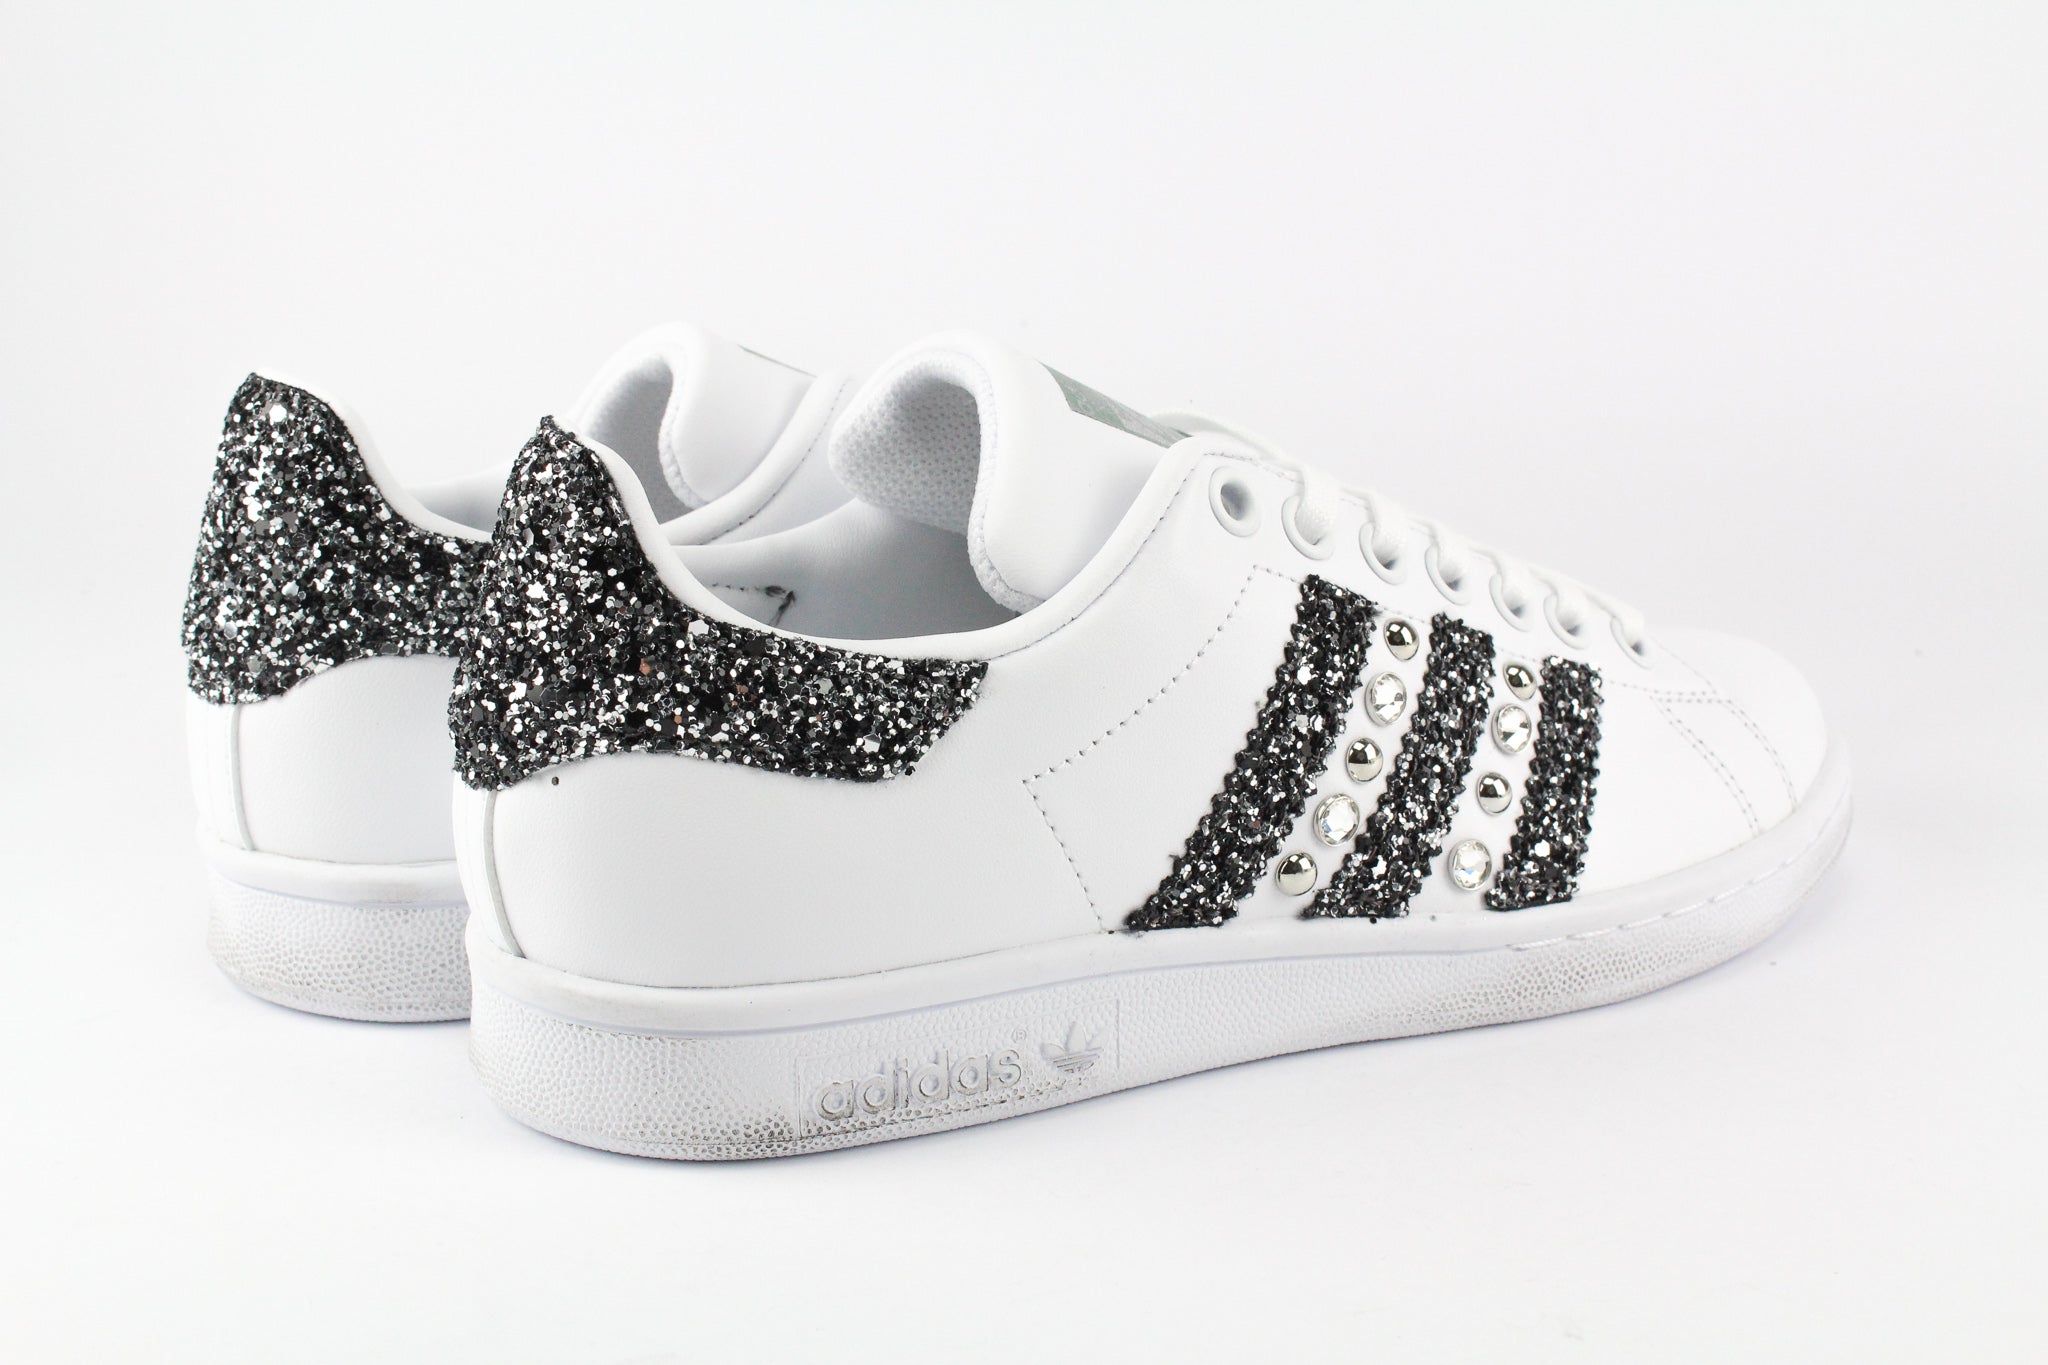 Adidas Stan Smith Personalizzate Strass Glitter & Perle